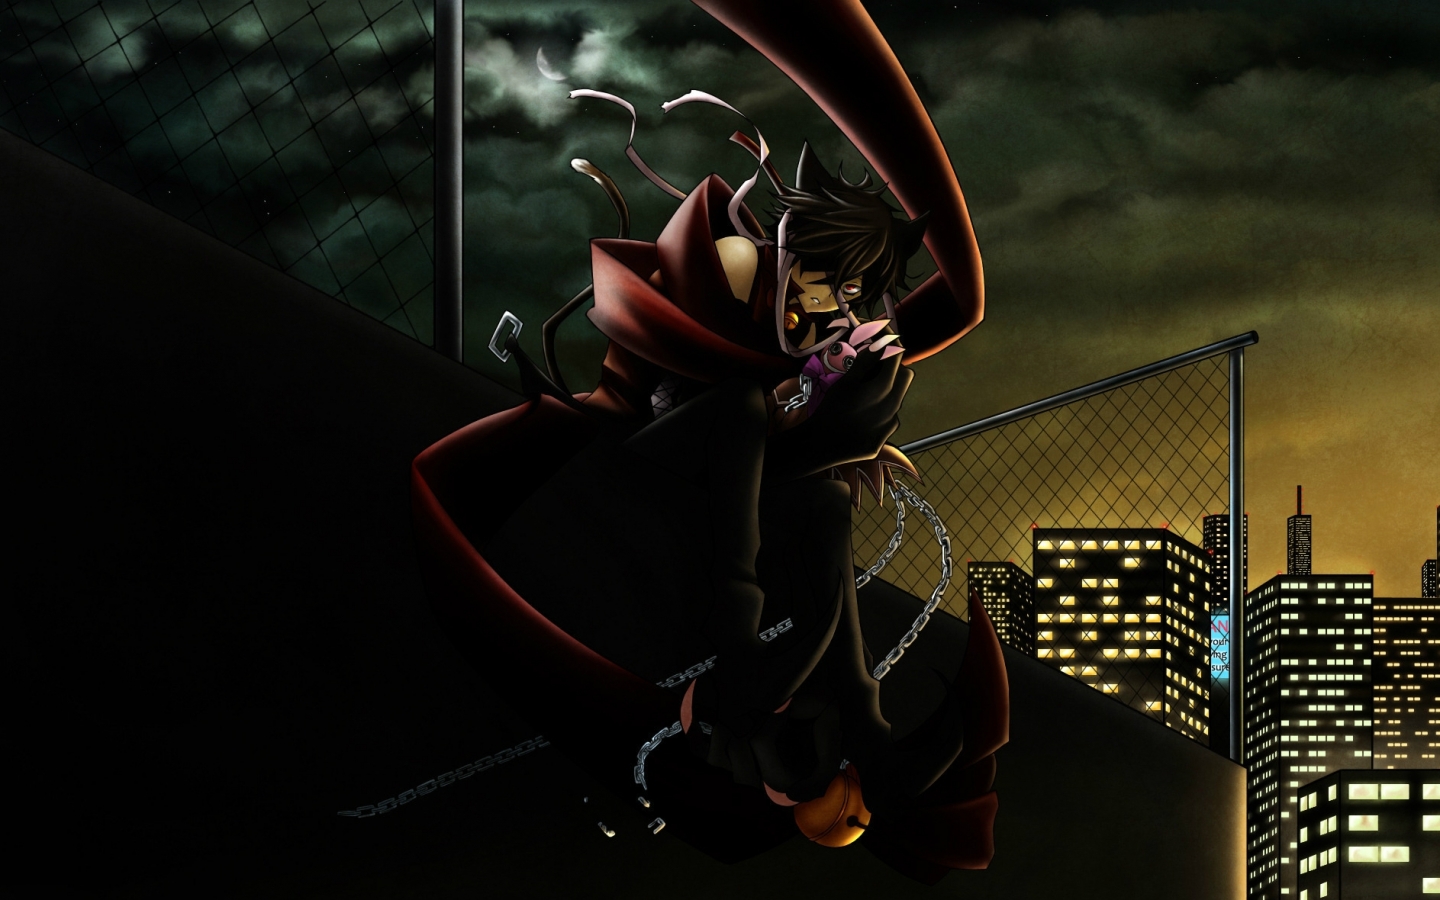 fondo de pantalla de anime 1440x900,juego de acción y aventura,juego de pc,oscuridad,cg artwork,personaje de ficción